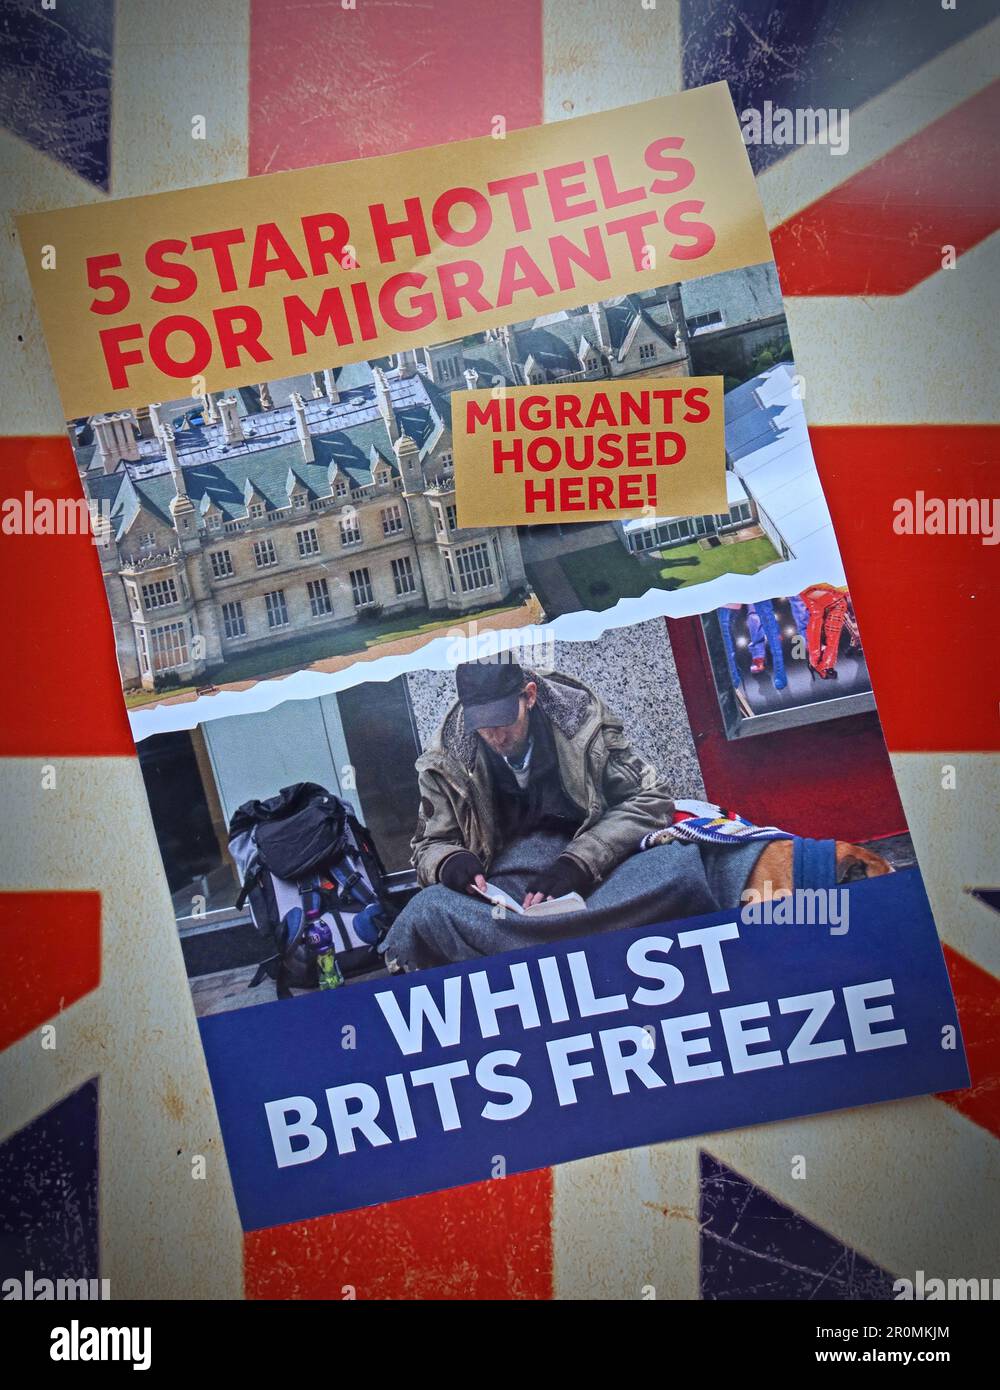 Hôtels 5 étoiles pour les immigrants - Patriotic alternative Far-Right council Election tracts, Warrington, Cheshire, Angleterre, Royaume-Uni, WA4 1NN Banque D'Images